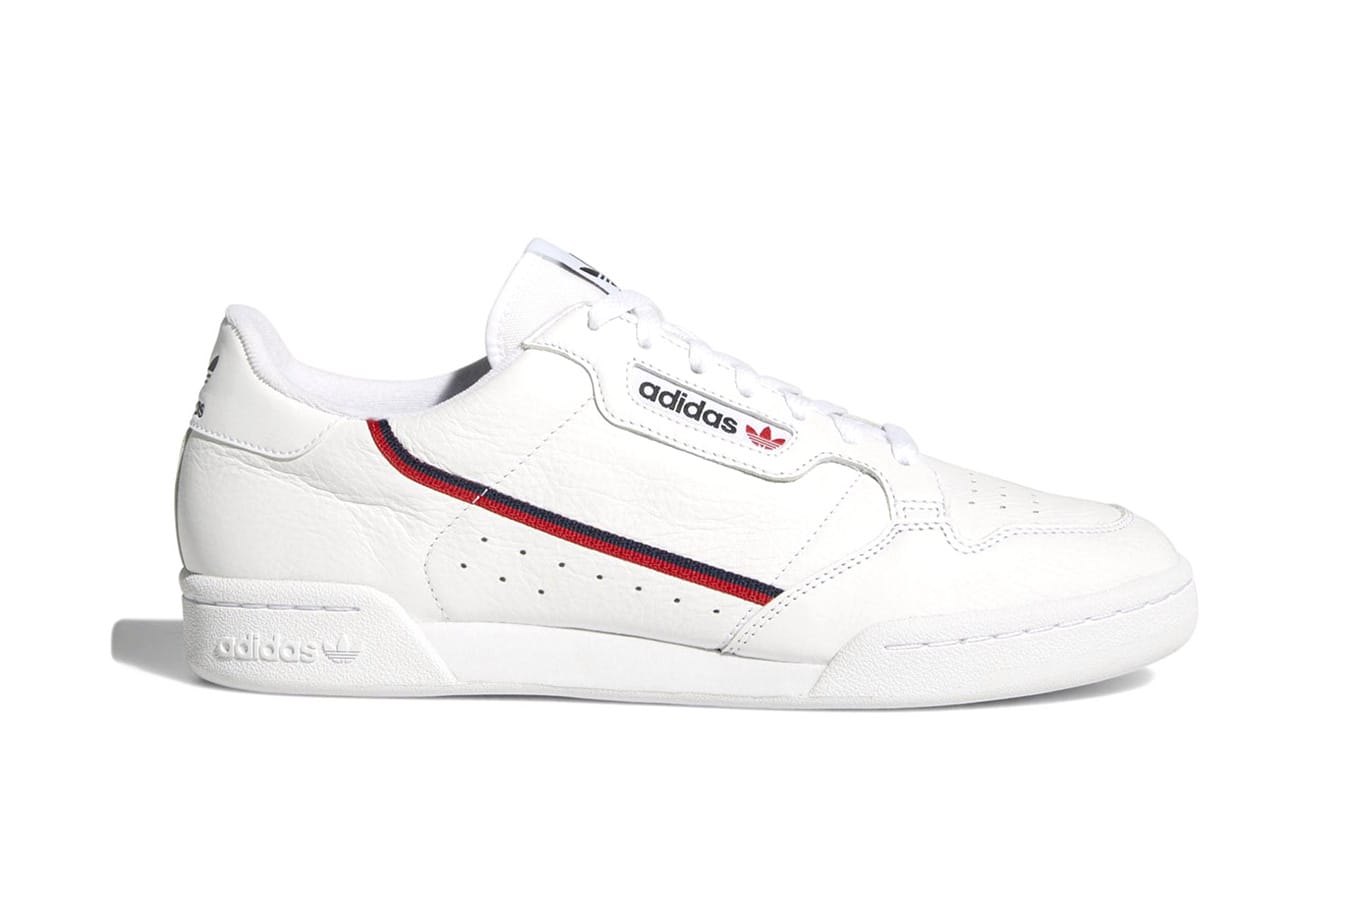 adidas Rascal White \u0026 Off-White Release 